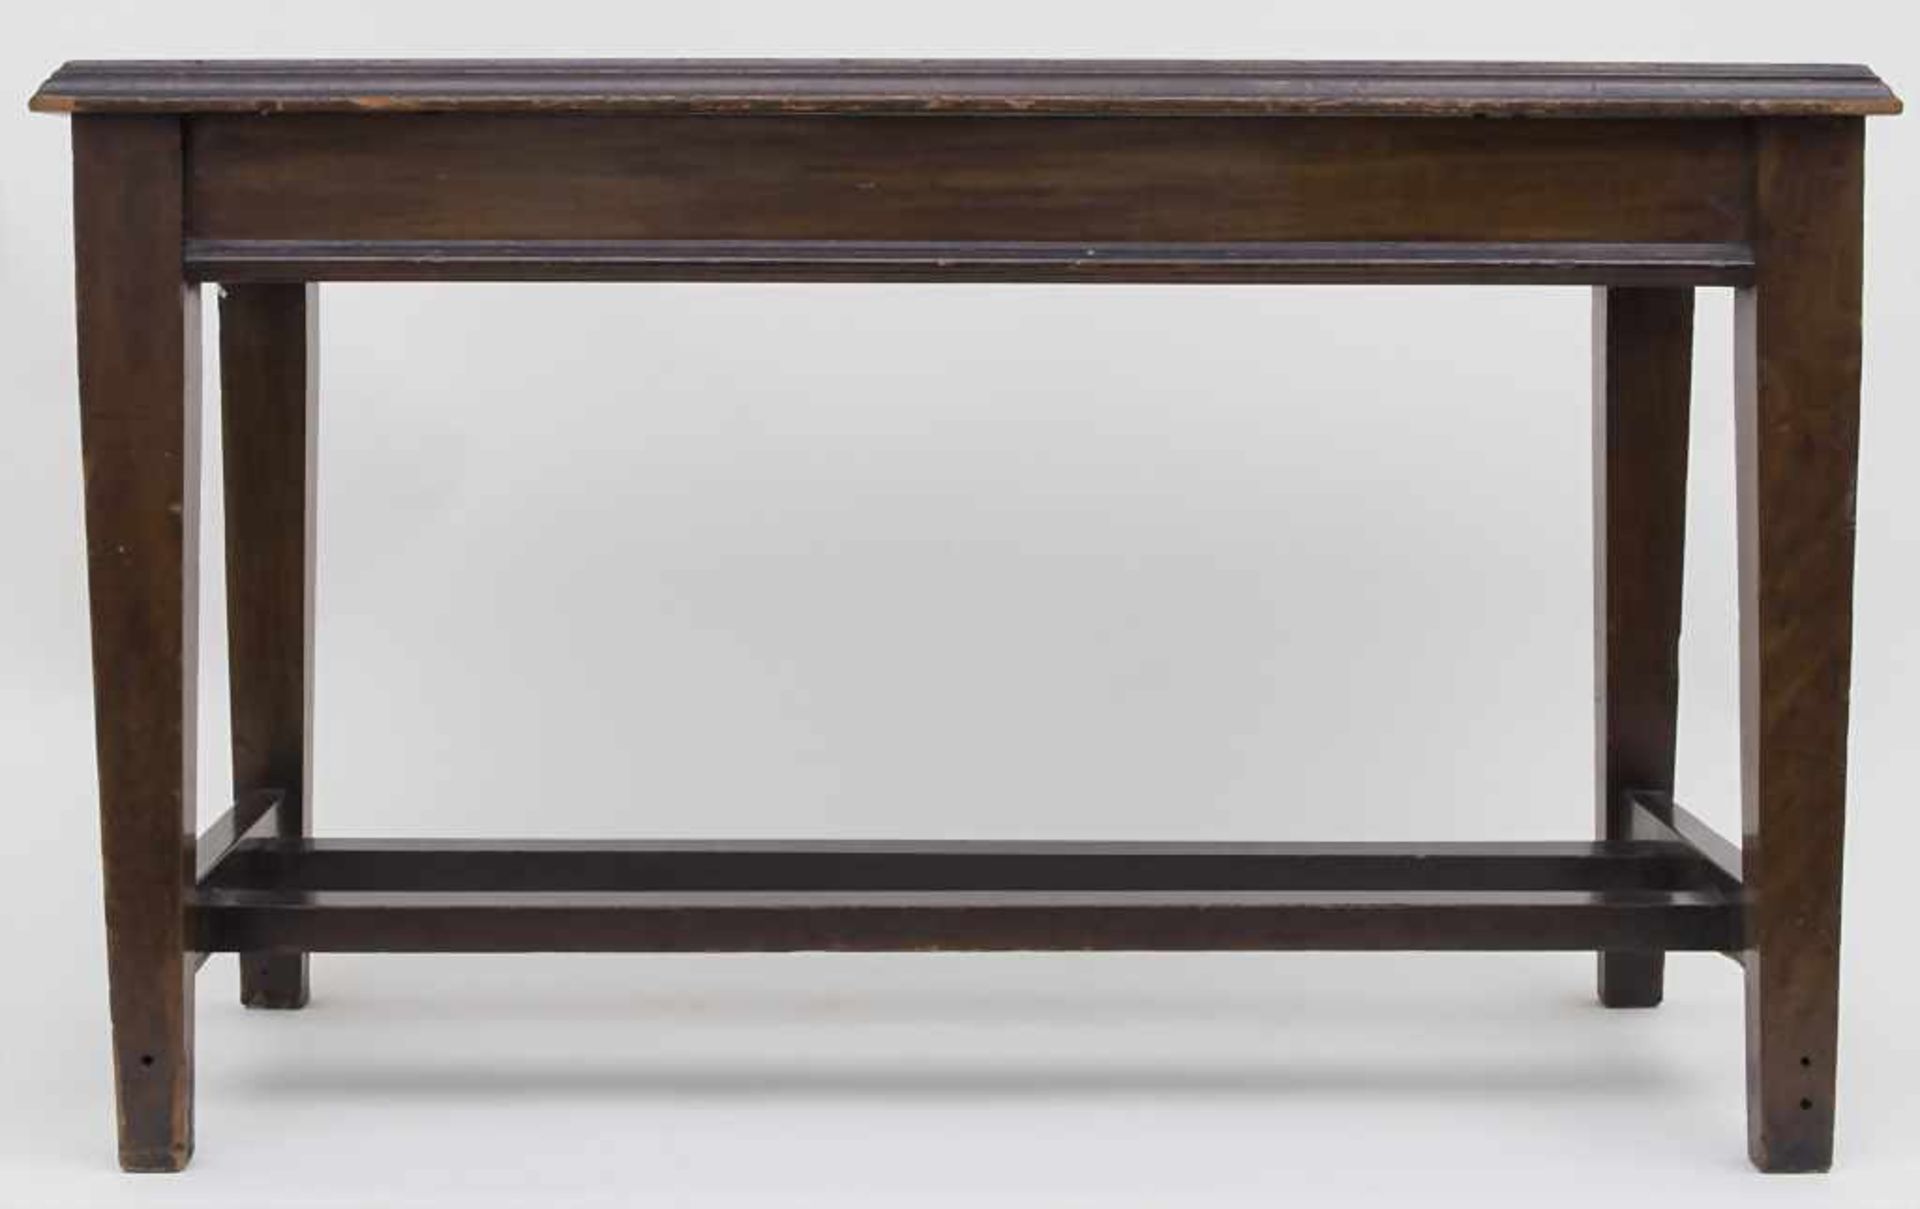 Tee Tisch / A tea table, Frankreich, 19. Jh.Material: gemasertes Holz, dunkel gebeizt, Maße: 51 x 83